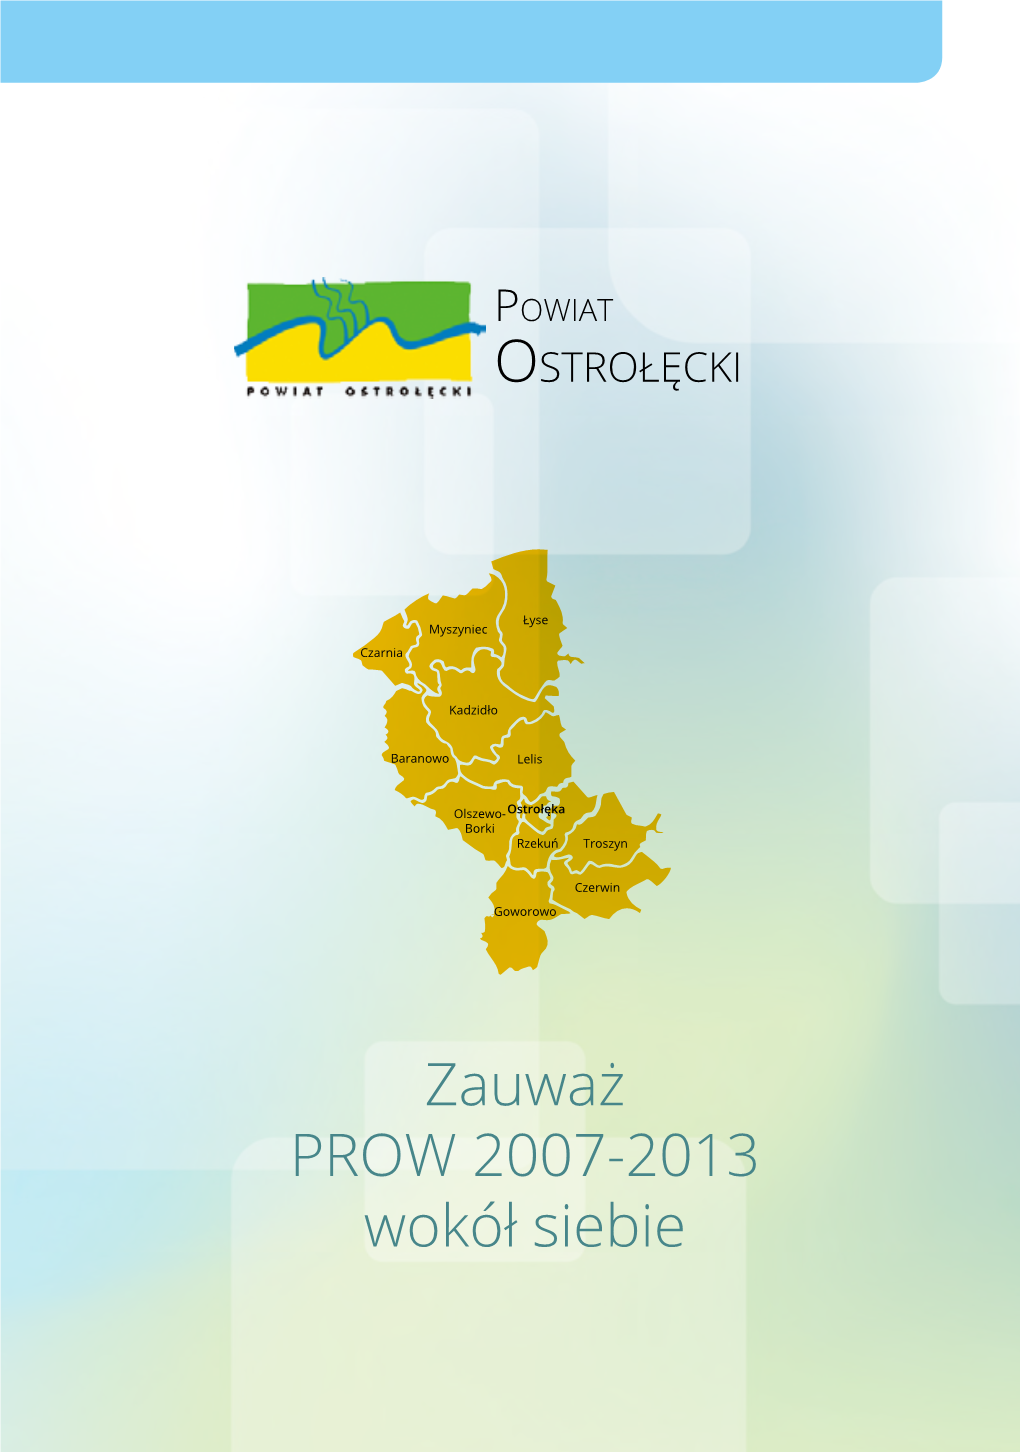 Zauważ PROW 2007-2013 Wokół Siebie Powiat OSTROŁĘCKI